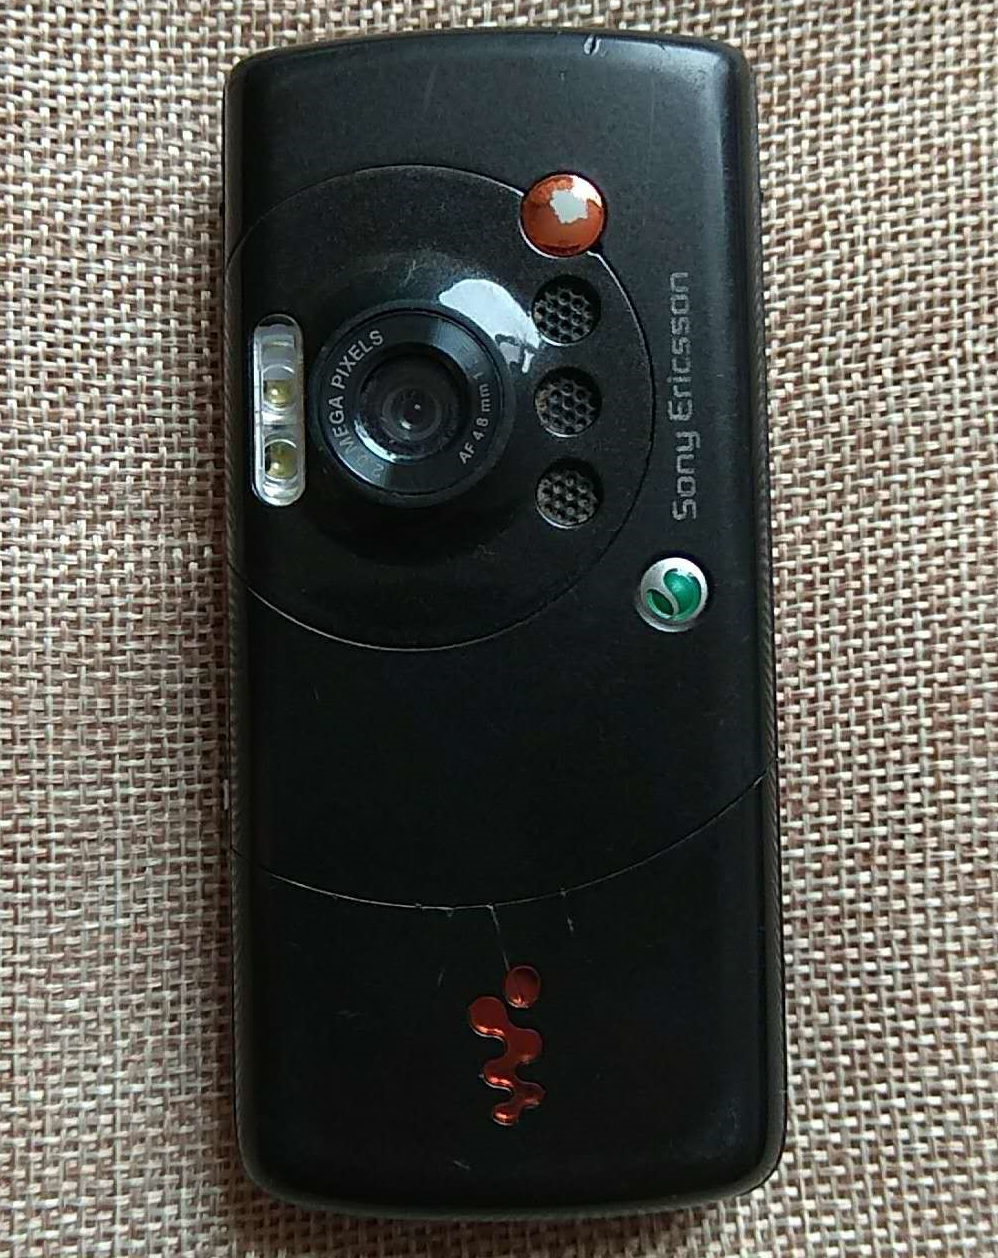 回味无穷人生道路第一台手机上：淘宝闲鱼98块下手索爱W810，觉得返回十几年前